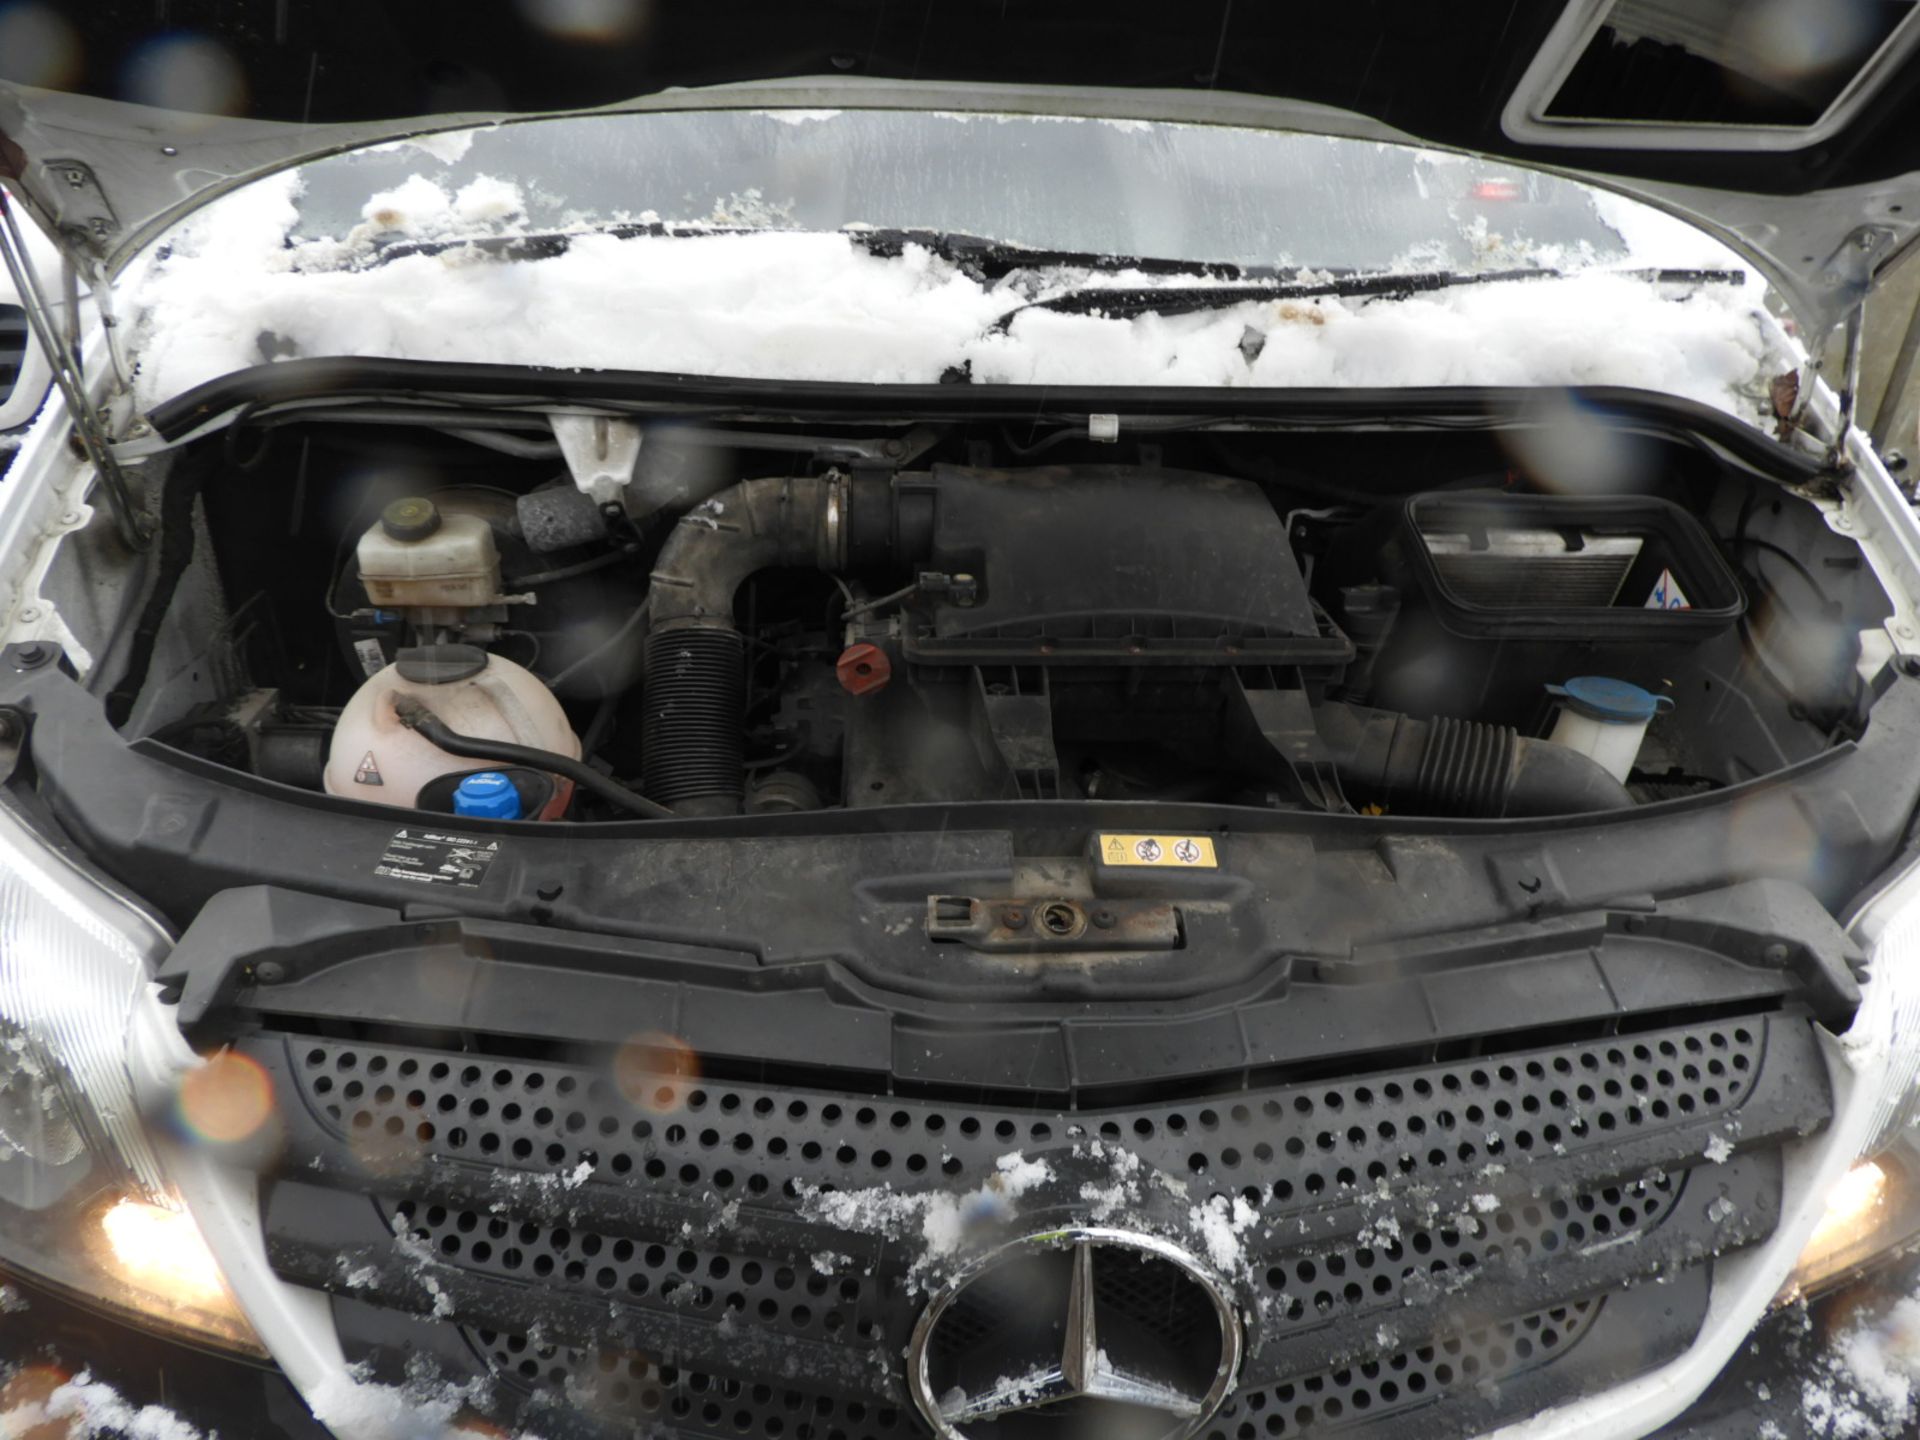 *Mercedes Sprinter Luton Van with Tail Lift Reg: KS66 HMZ, Mileage: 52555 - Image 12 of 14